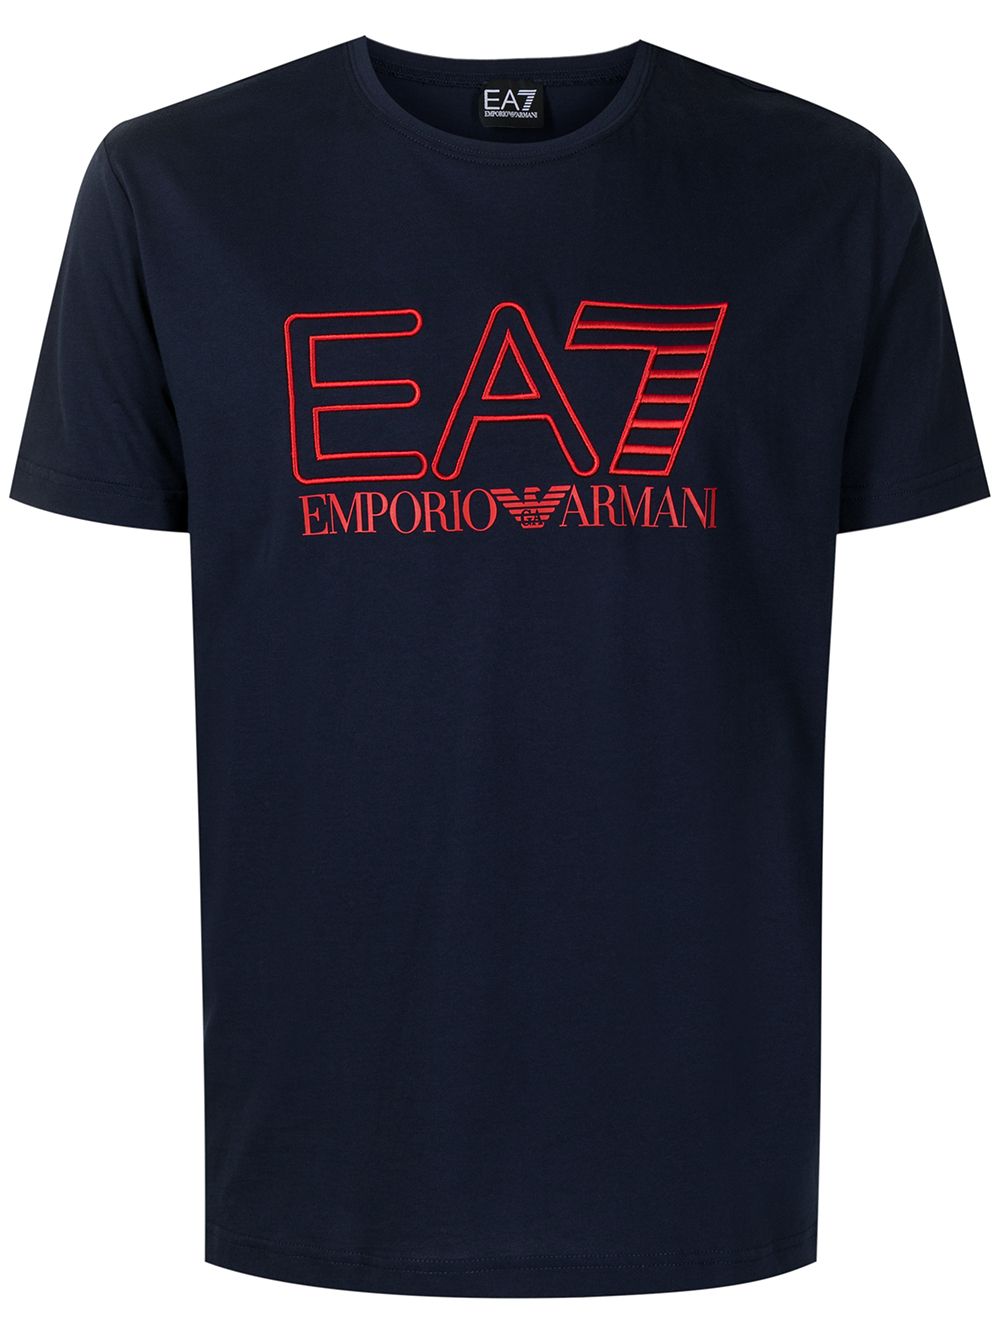 фото Ea7 emporio armani футболка с вышитым логотипом